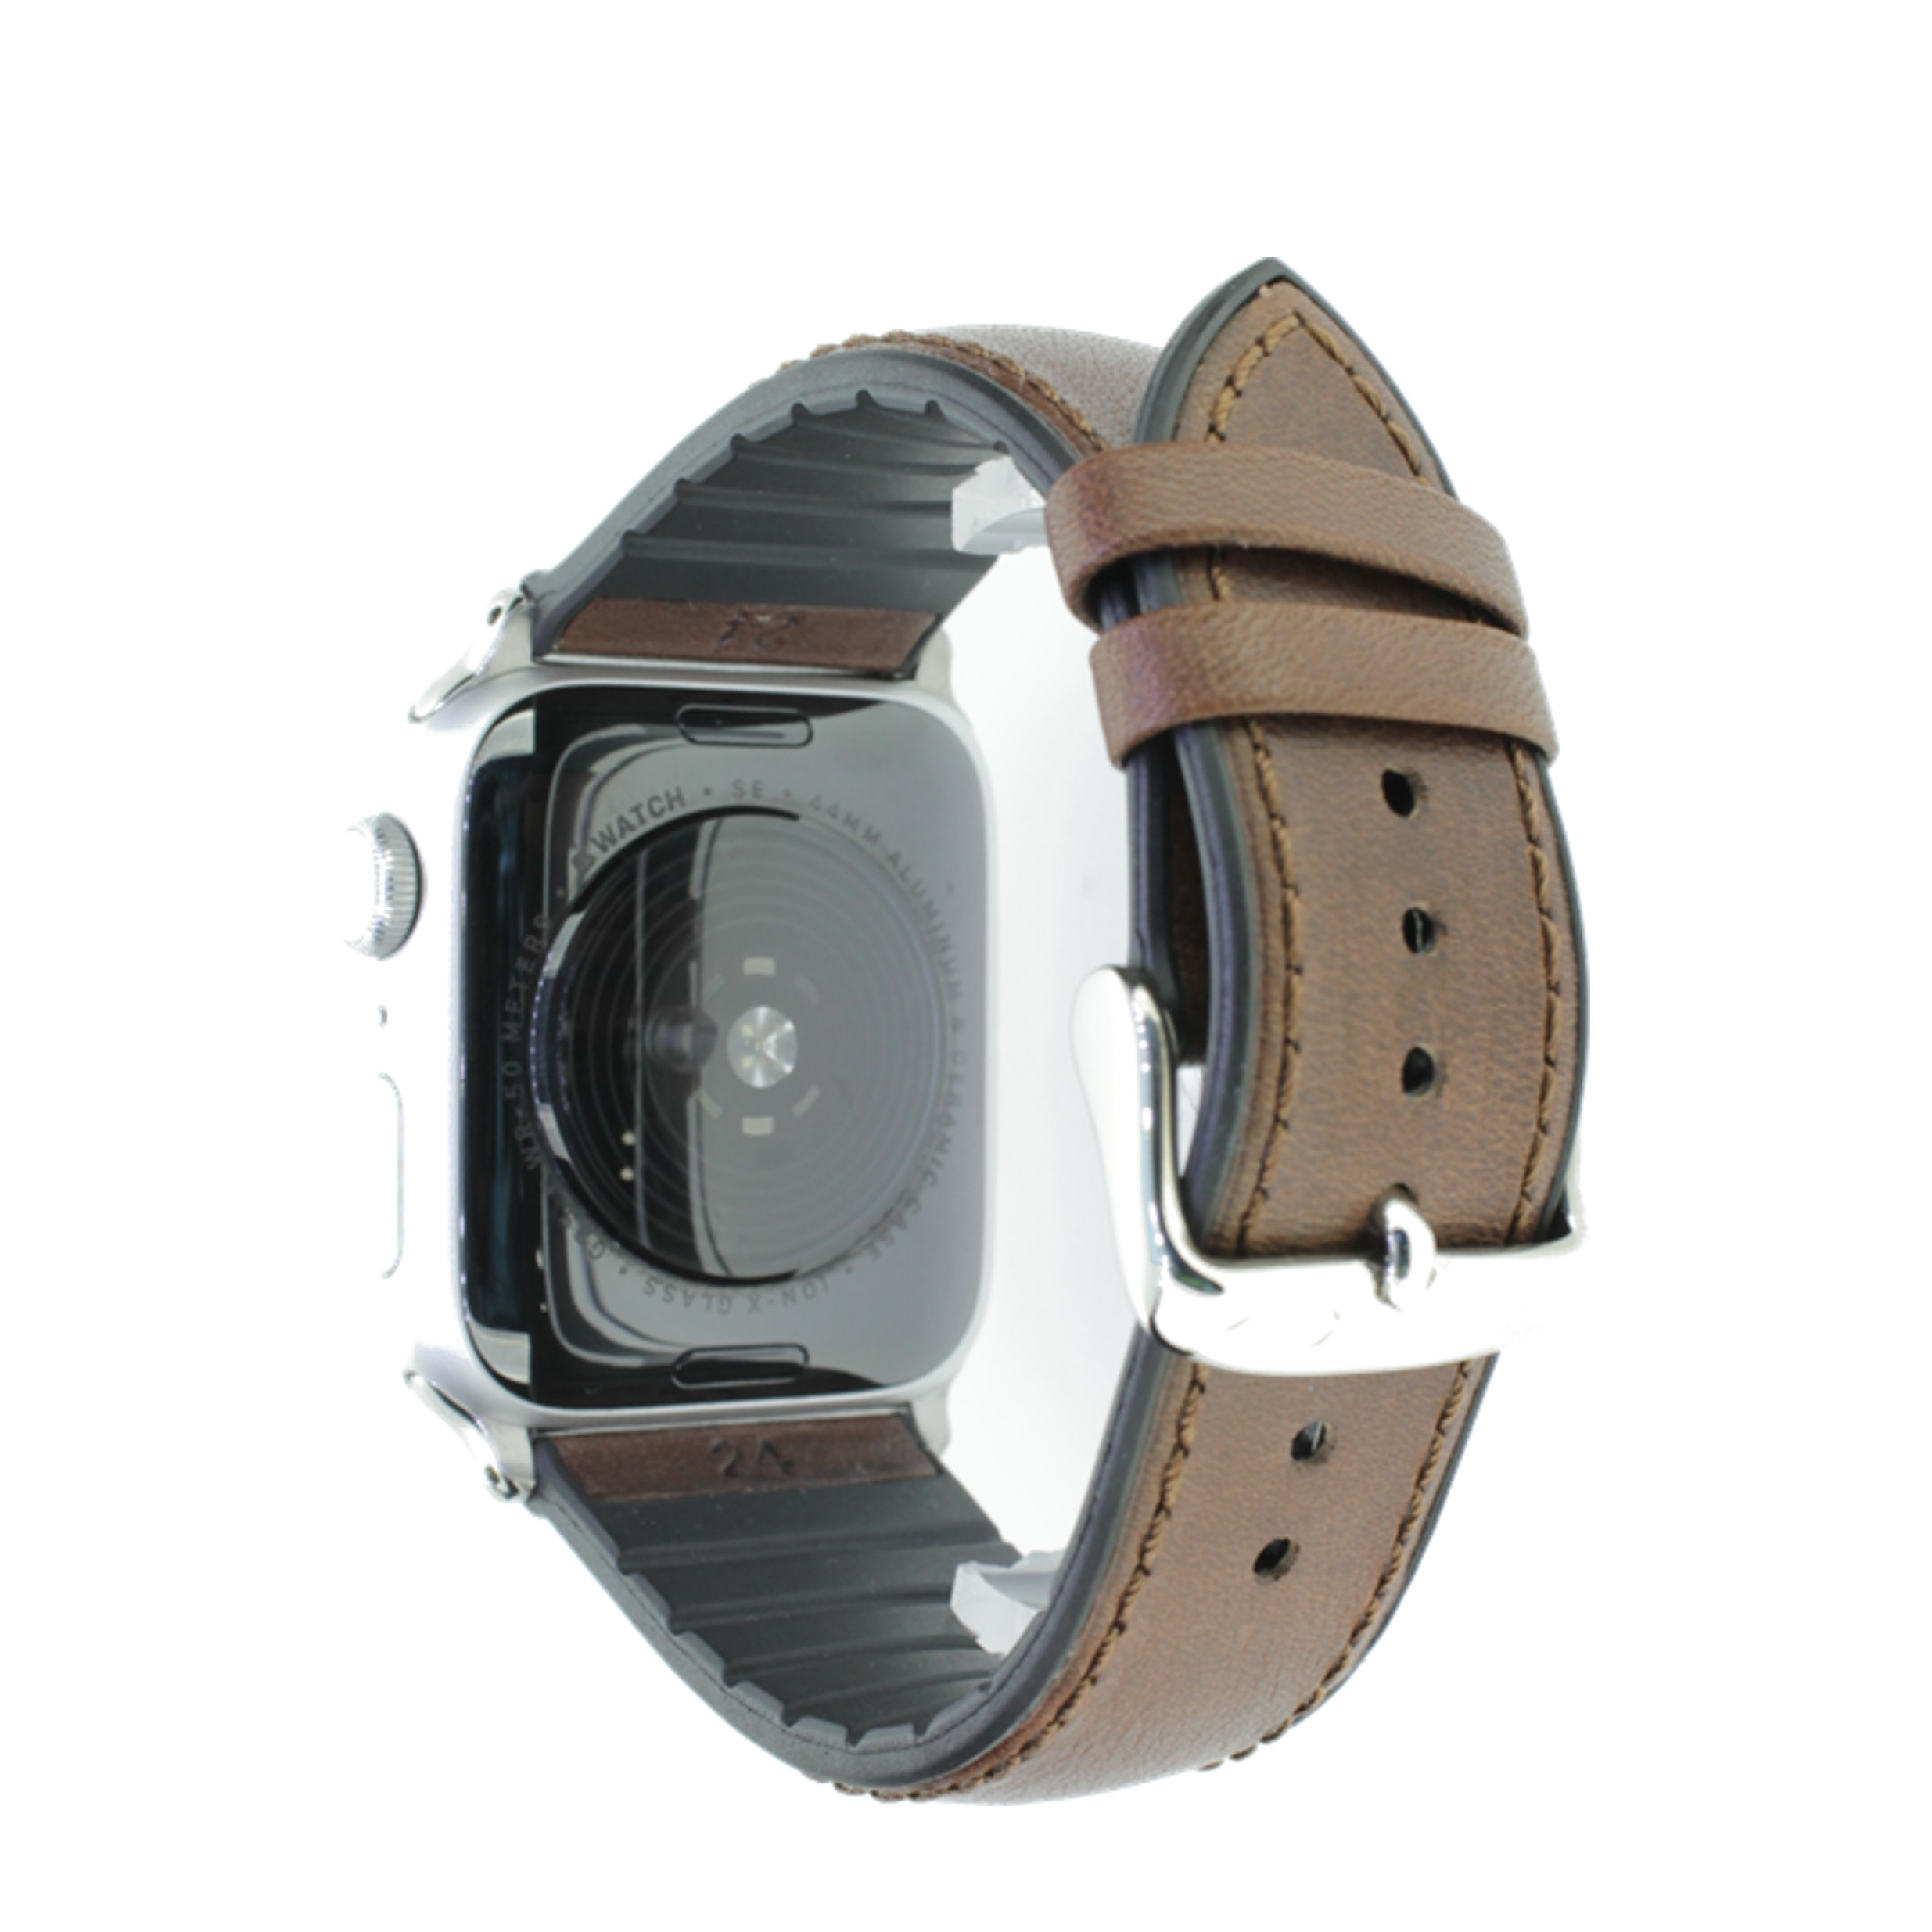 Image of Rhein Fils - Explorer Apple Watch (45/44/42 mm) Kalbsleder Ersatz Armband mit Kautschuk Innenfutter (Gelenkumfang: 190 - 235mm) - Dunkelbraun bei Apfelkiste.ch